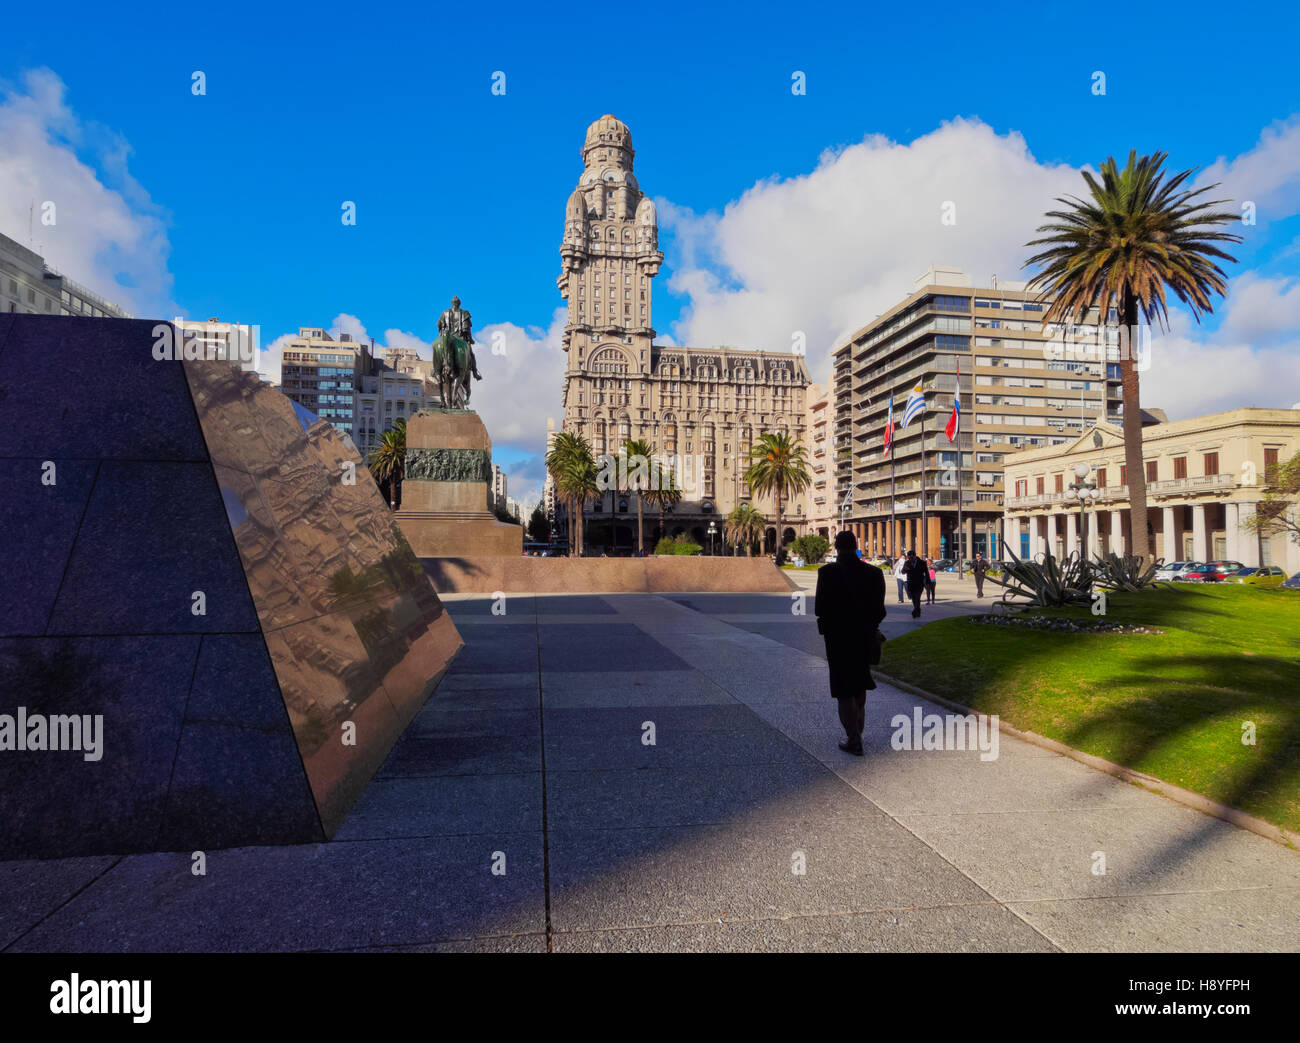 L'Uruguay, Montevideo, vue de la place de l'indépendance avec le monument d'Artigas et le palais Salvo. Banque D'Images